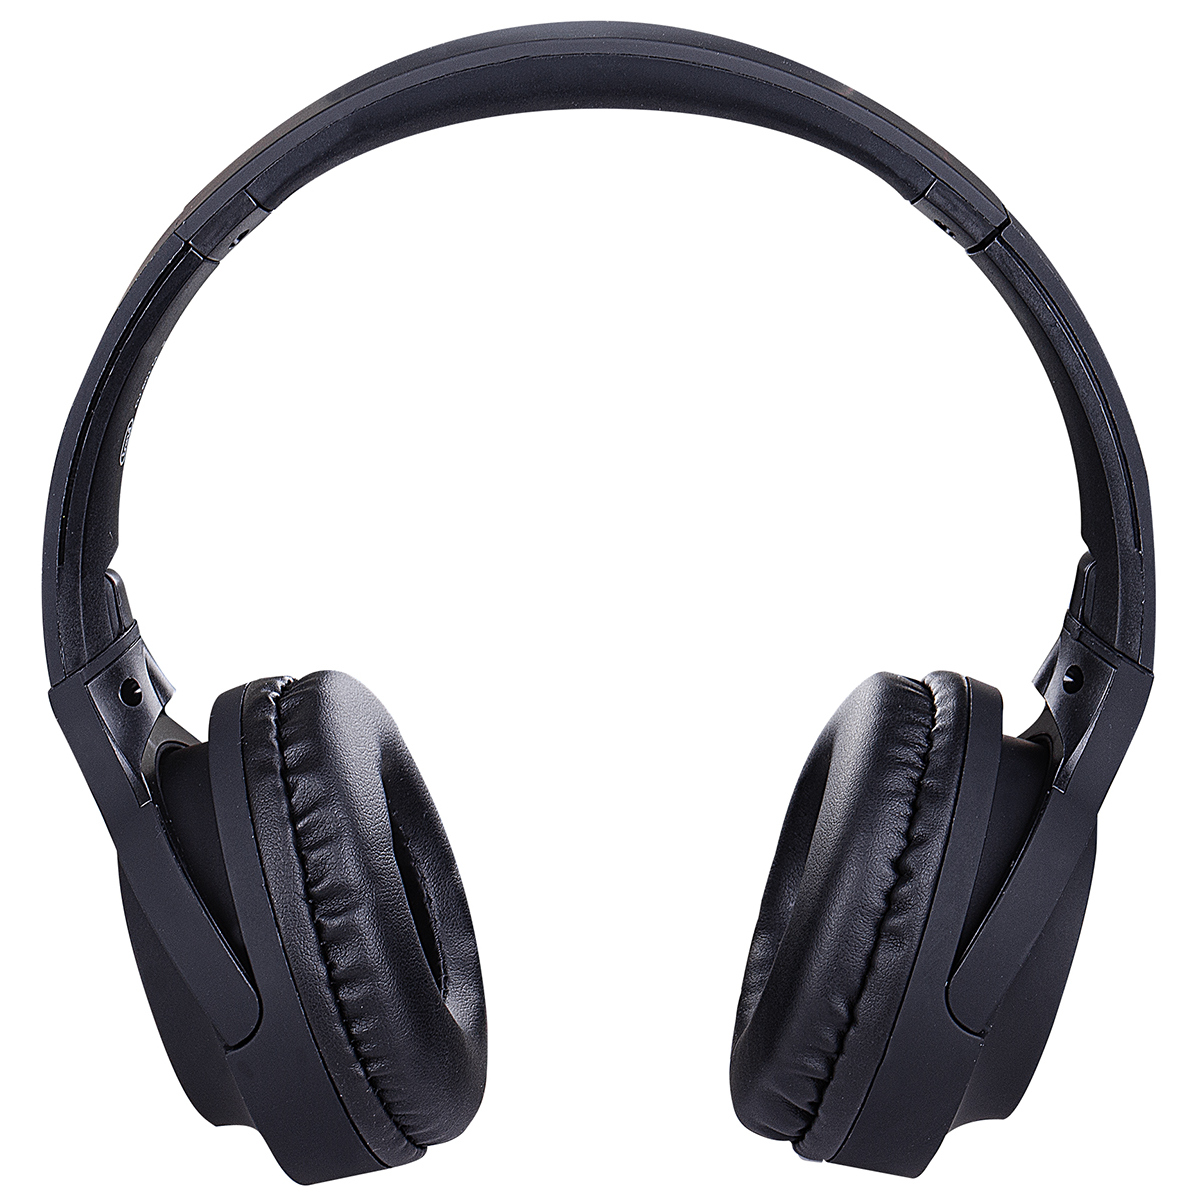 Trevi DJ601M Digitális sztereó fejhallgató mikrofonnal, fekete színben...